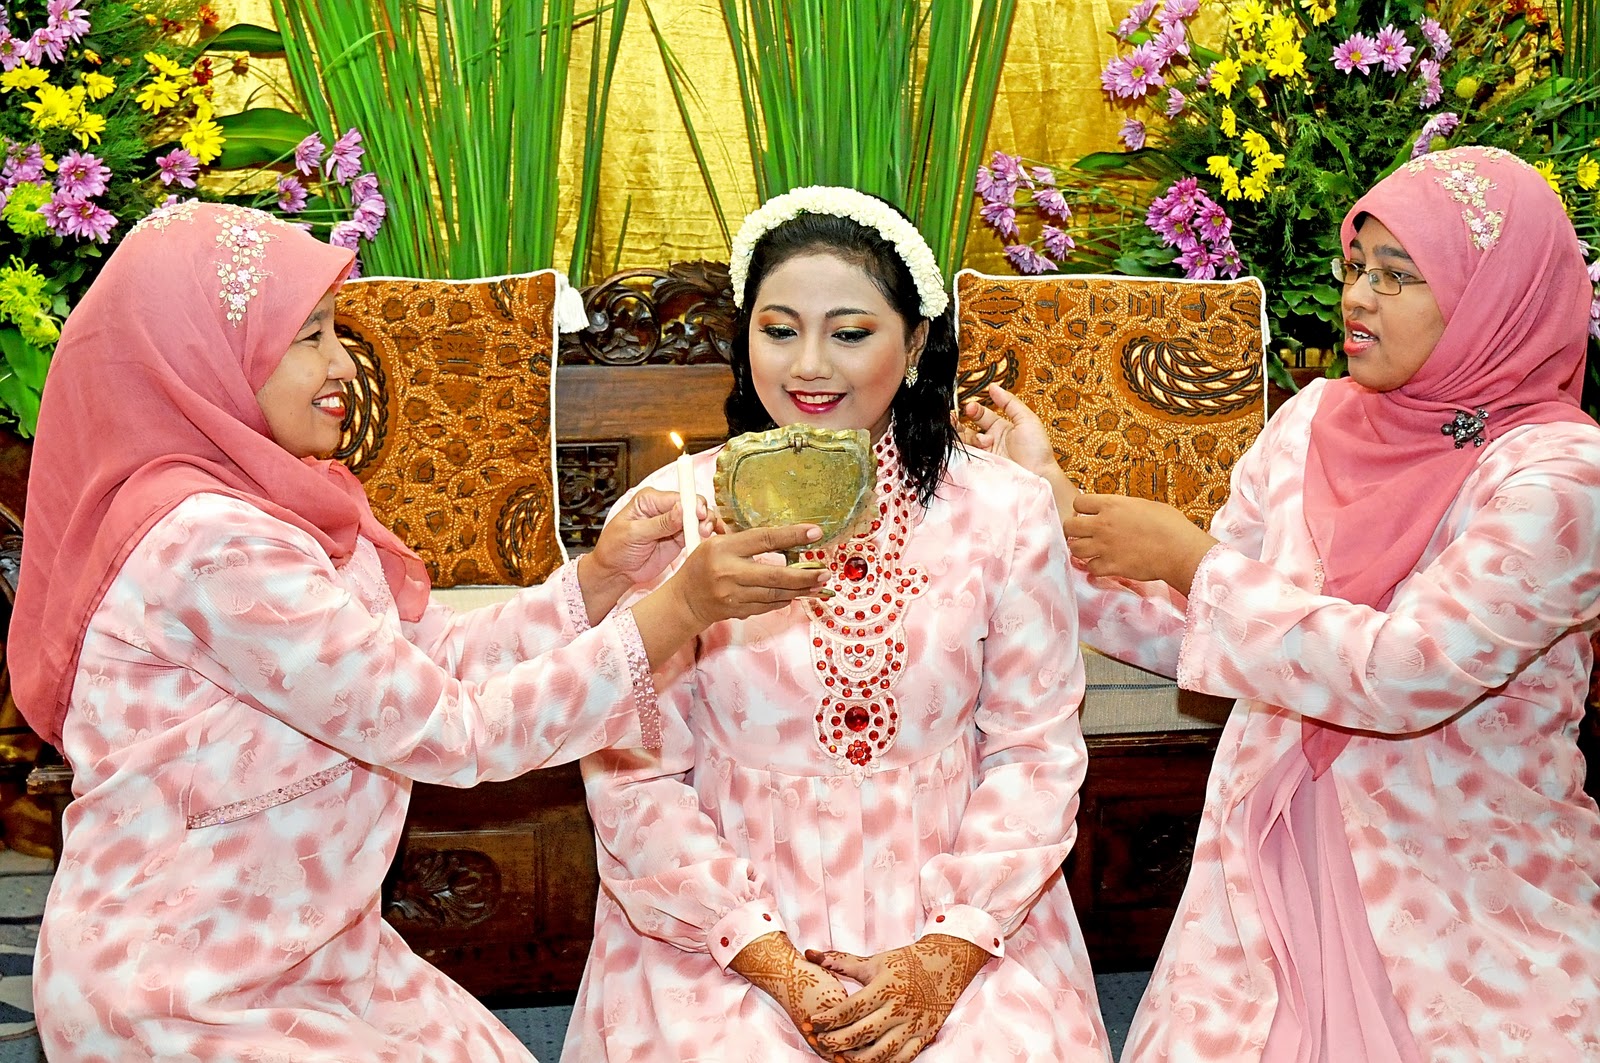 Perempuan Suku Banjar yang dipingit setelah menikah | Foto: rizmarizma.blogspot.com